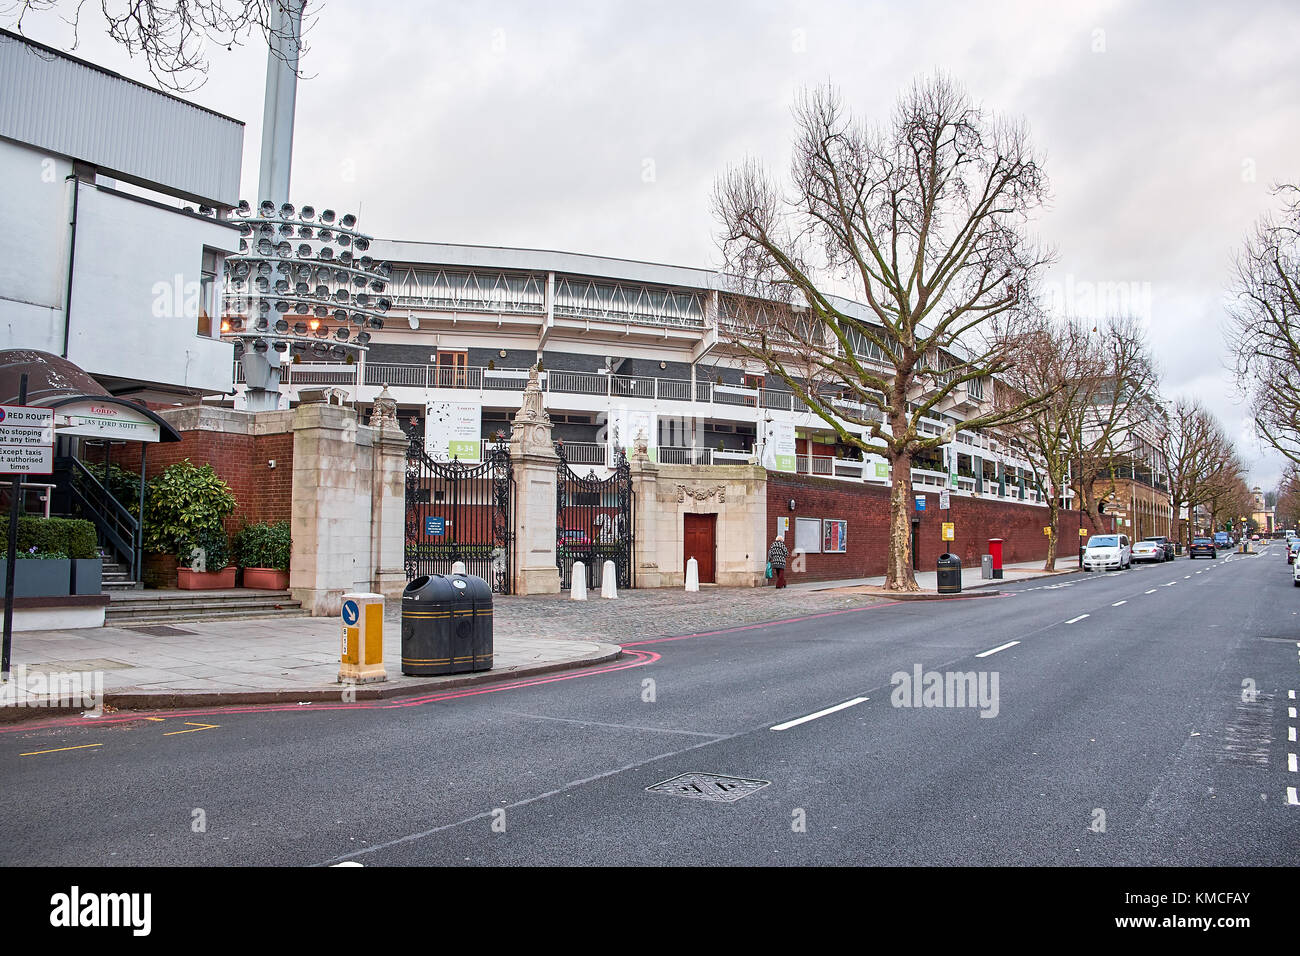 London city - 25 dicembre 2016: uno degli ingressi al Lord's Cricket Ground, chiuso con un cancello di ferro Foto Stock